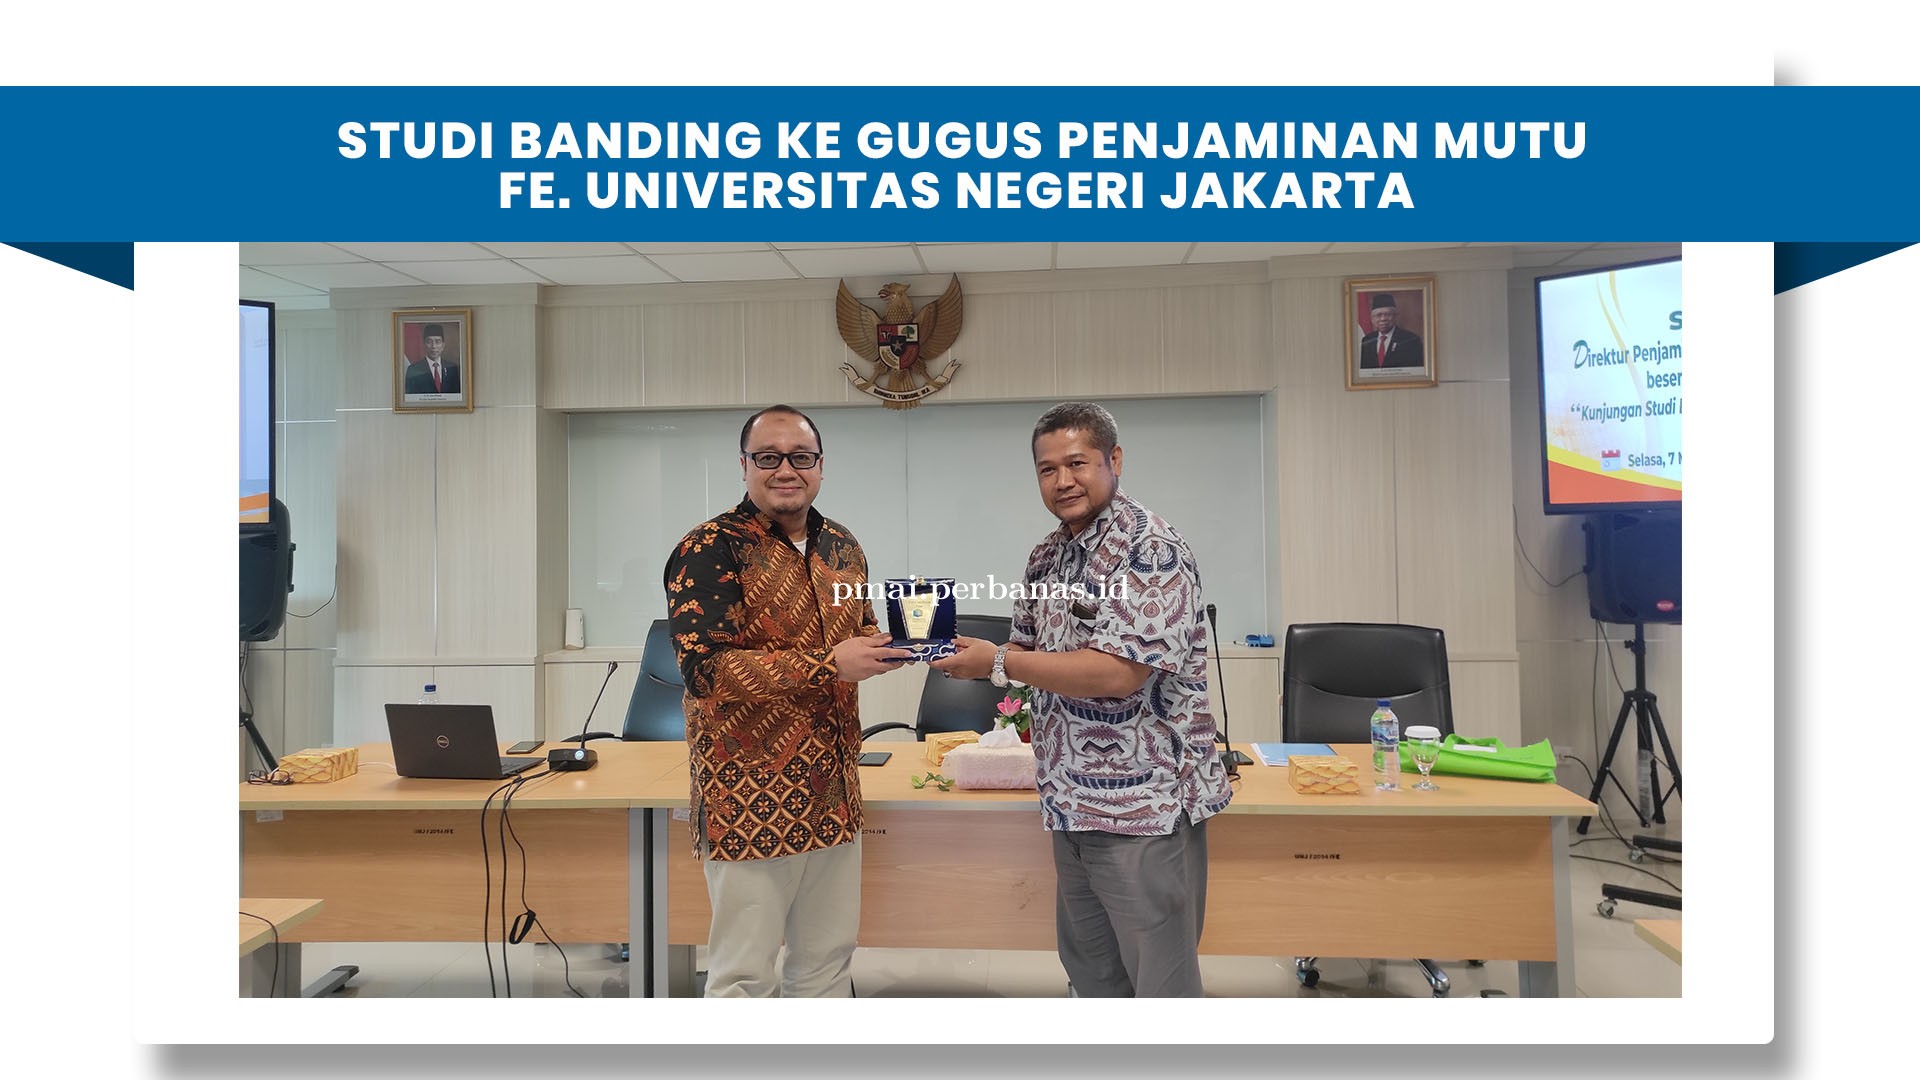 Studi Banding ke Gugus Penjaminan Mutu Fakultas Ekonomi Bisnis Universitas Negeri Jakarta